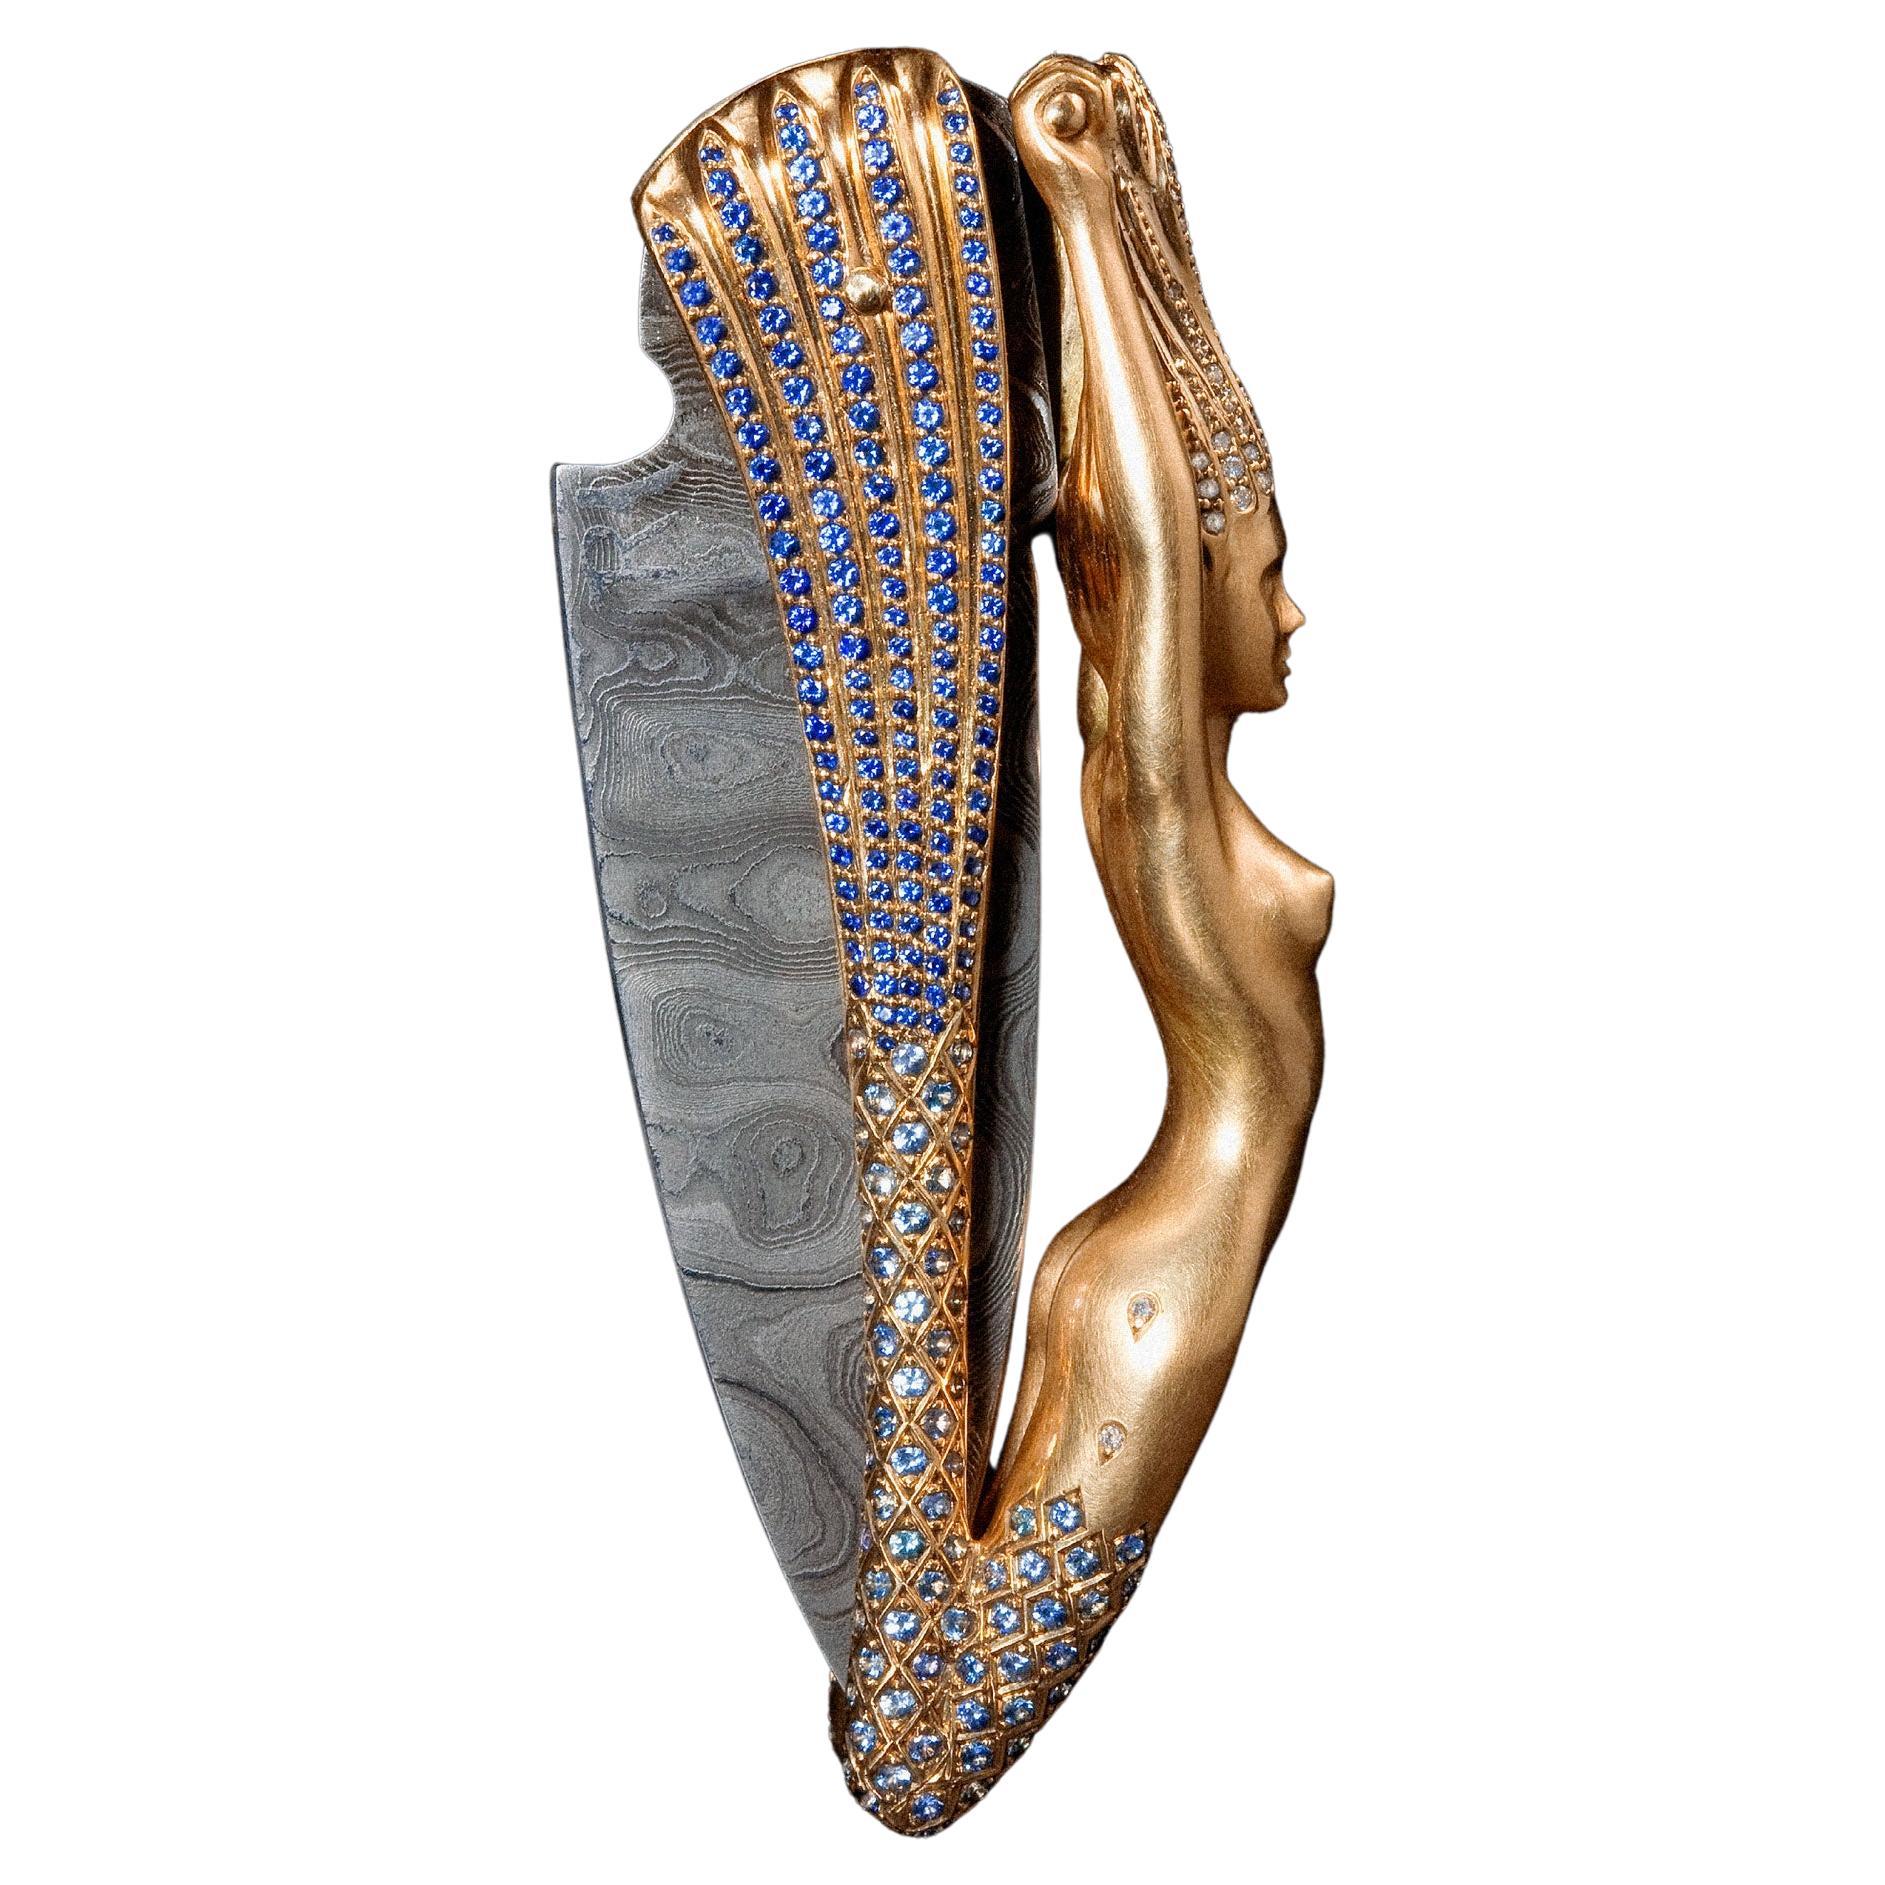 Couteau sirène sculptural fait main en or rose 18 carats, damast superposé et diamants